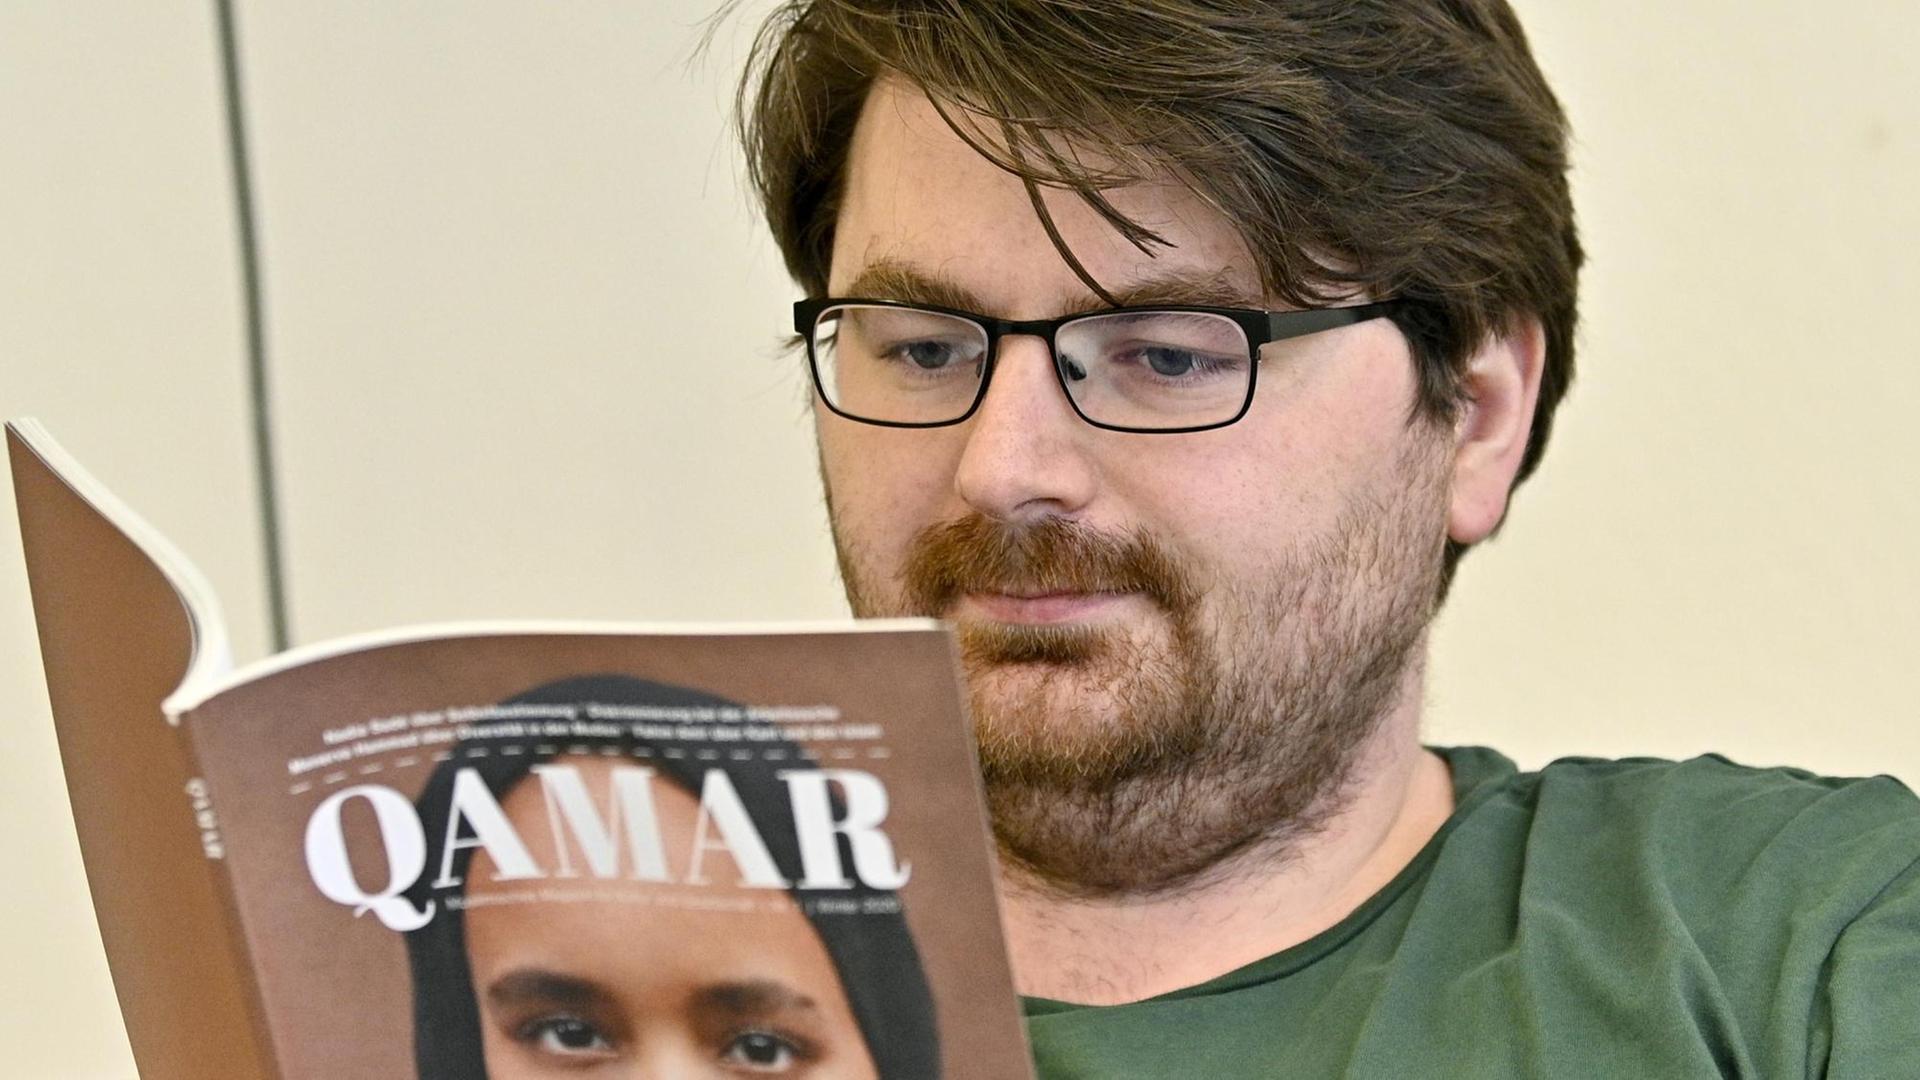 Muhamed Beganovic, Gründer des muslimischen Magazins "Qamar" blättert durch eine Ausgabe seines Magazins.